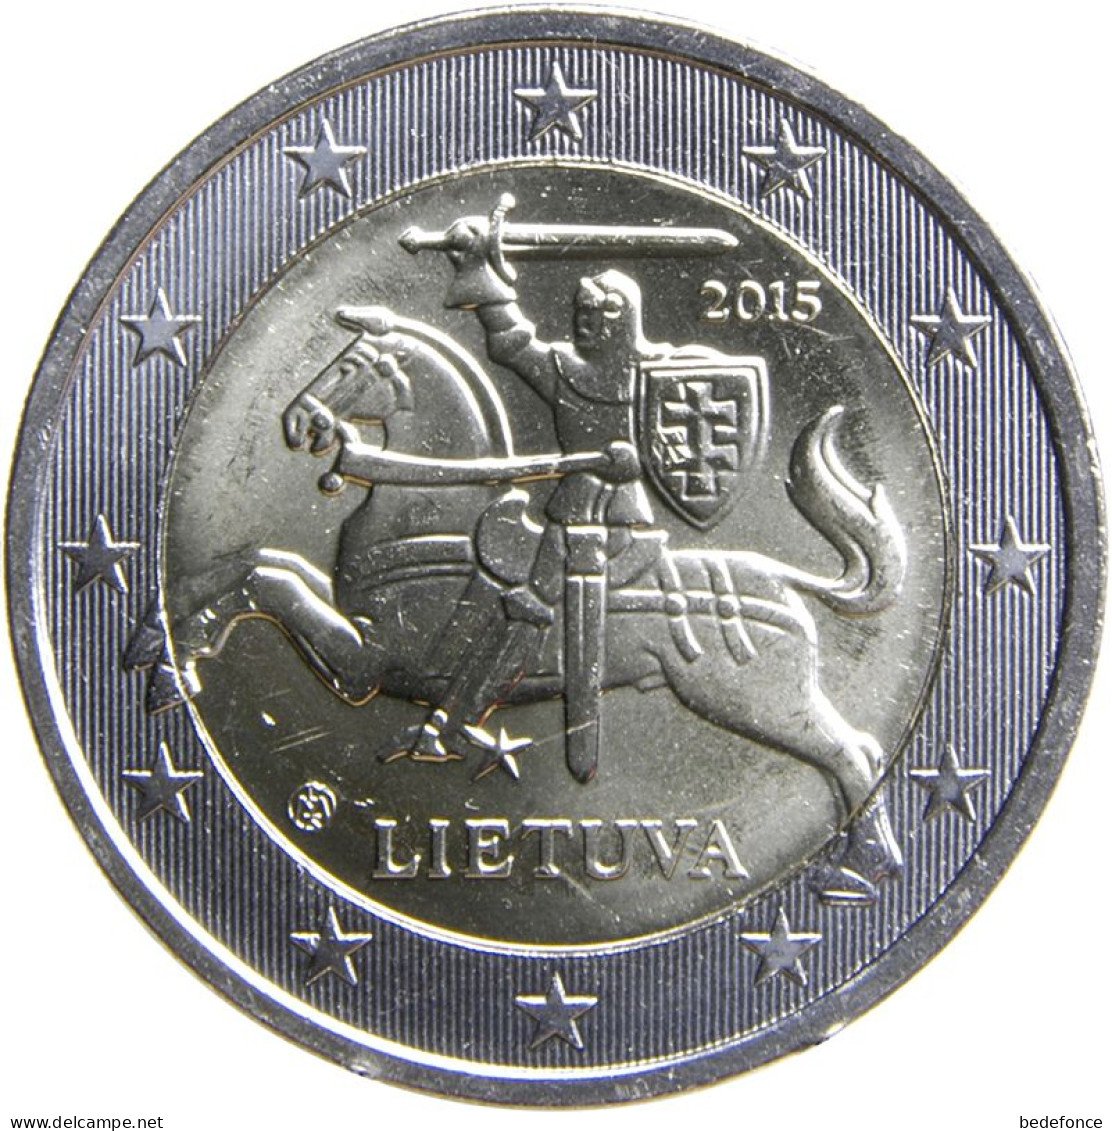 Monnaie - Lituanie - 2€ - 2015 - Litauen